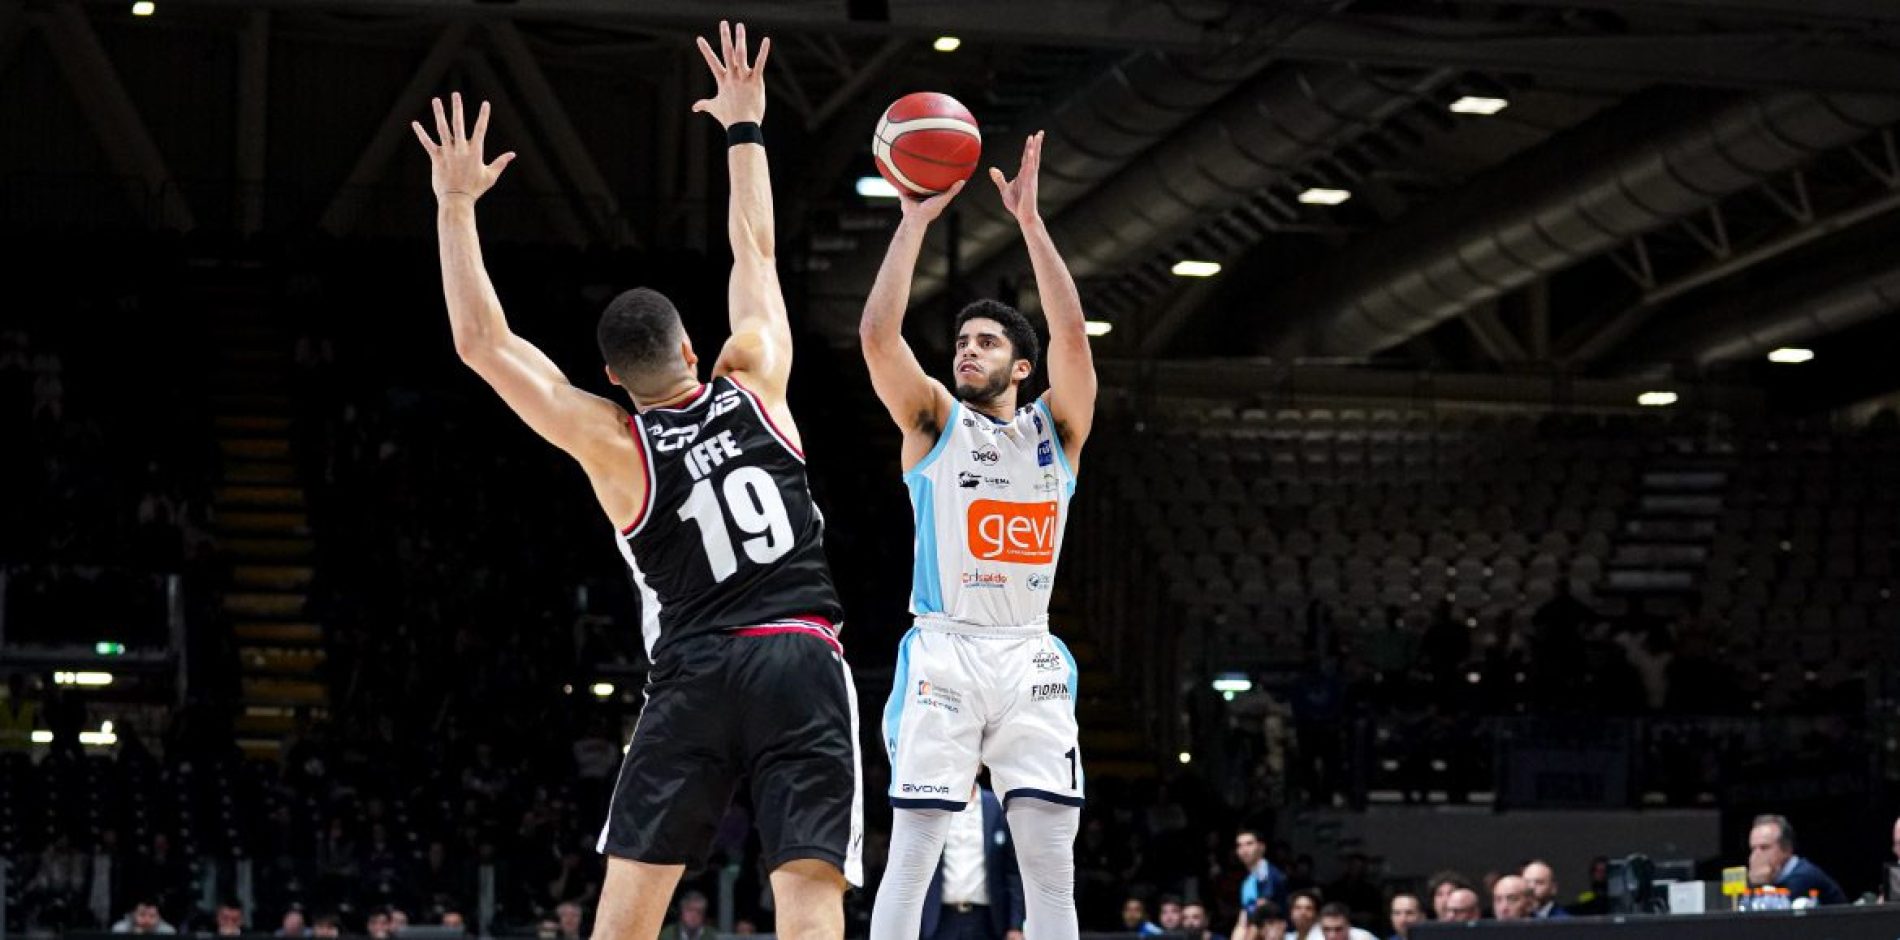 Gevi Napoli Basket, orgoglio e determinazione: battuta la capolista Virtus Bologna